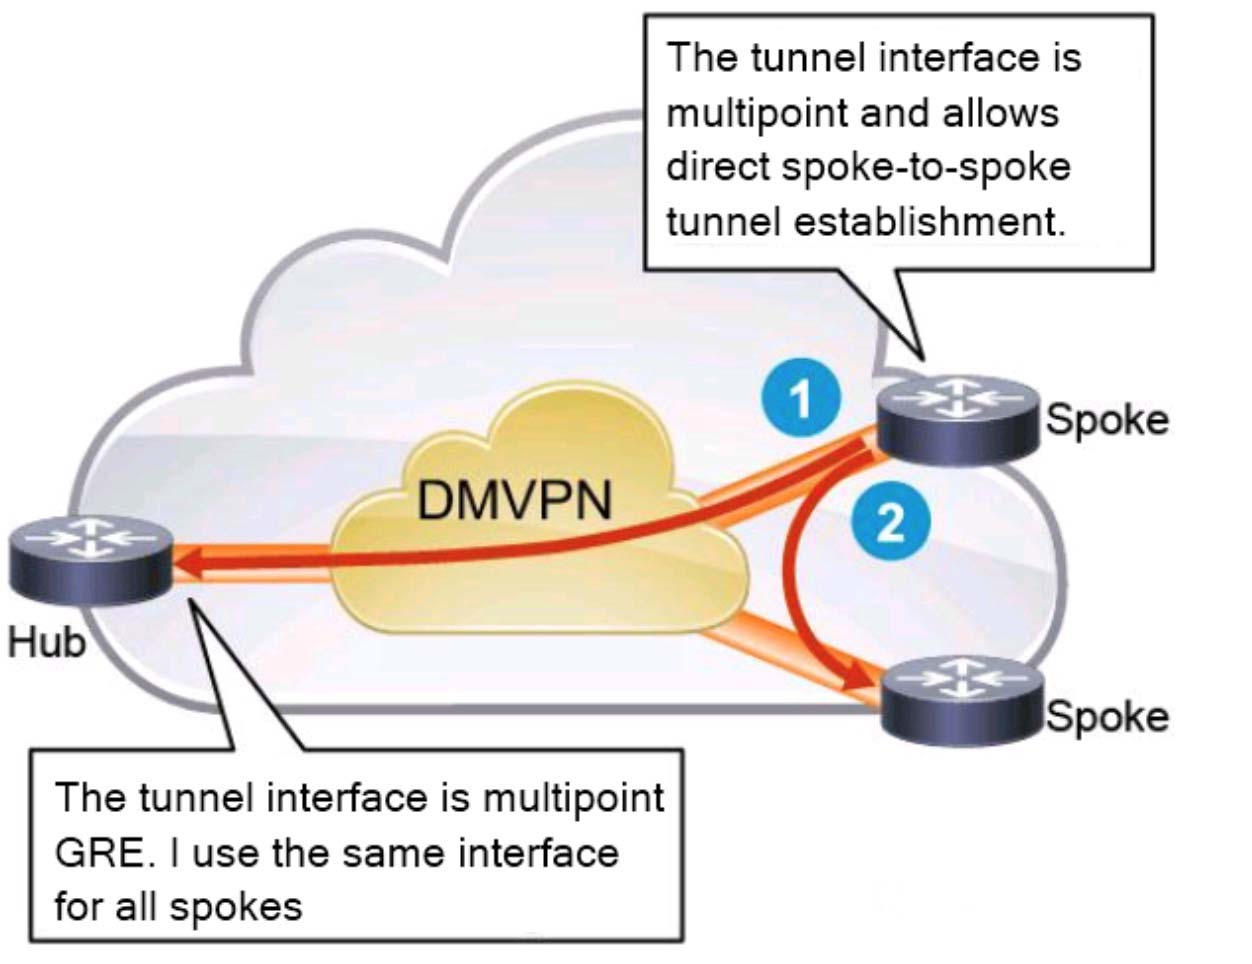 dmvpn tunnel flaps intermittently